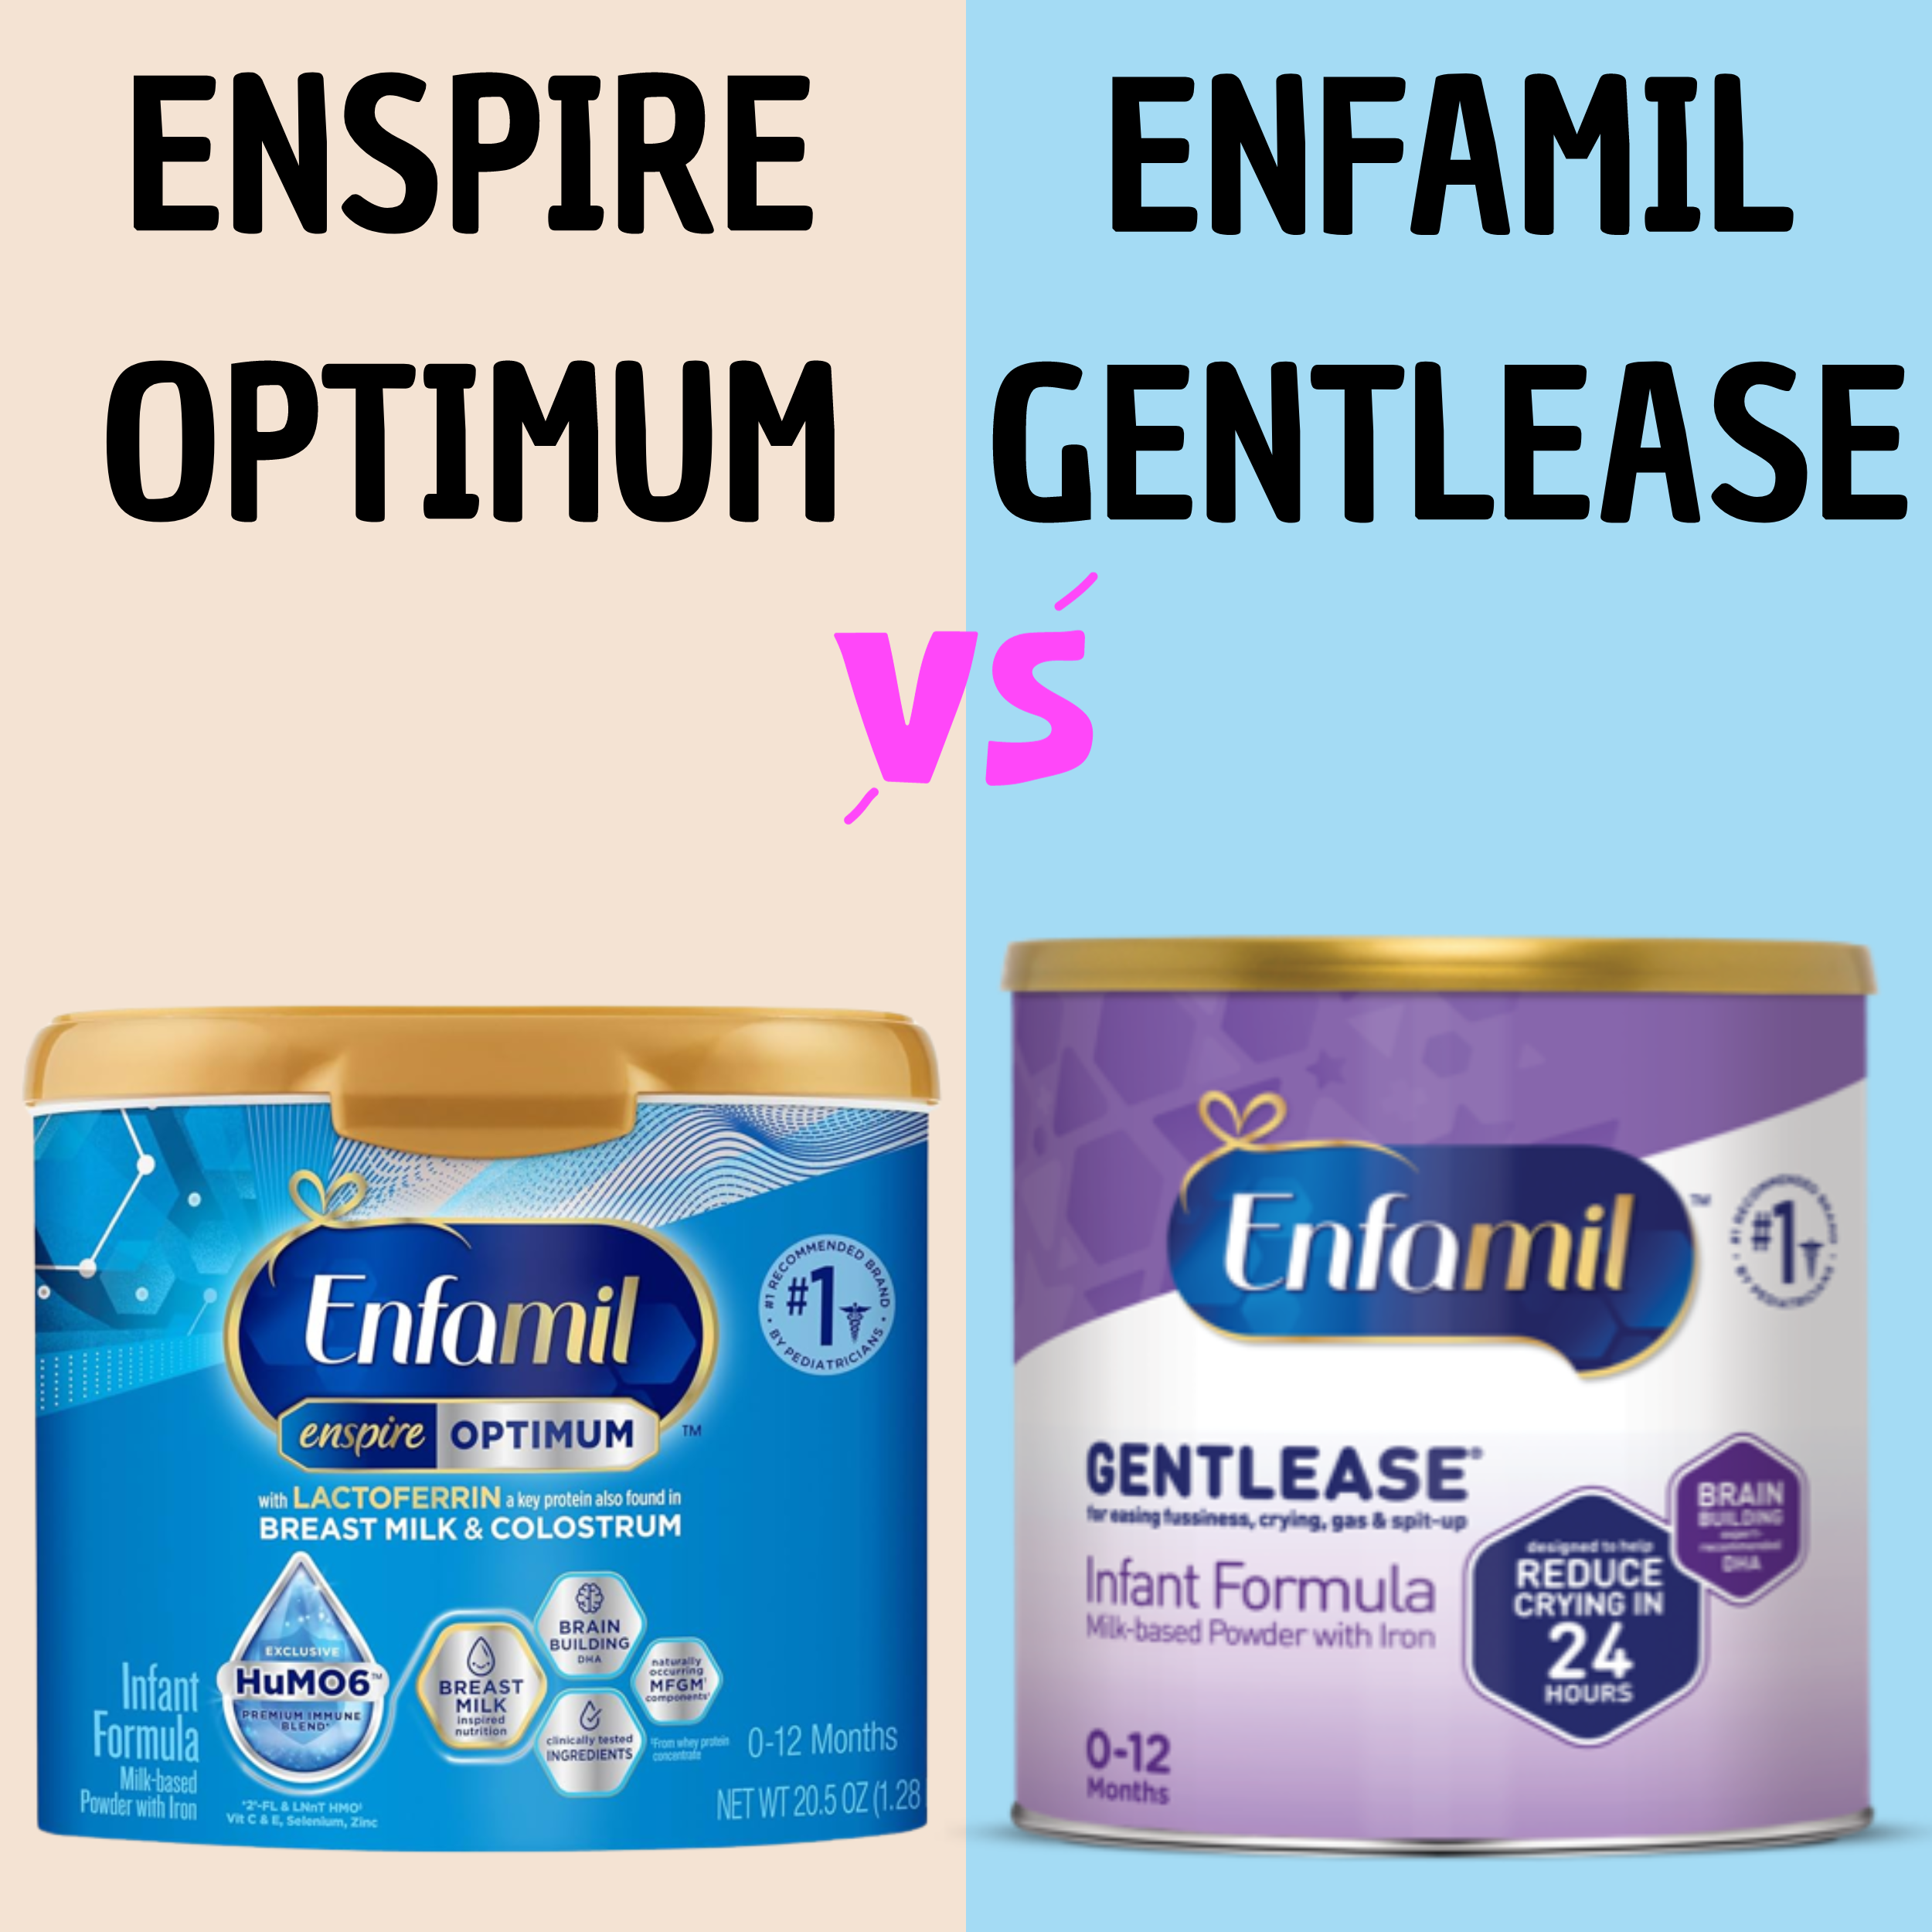 You are currently viewing Enfamil Gentlease Vs Enfamil Enspire Optimum: Full Comparison